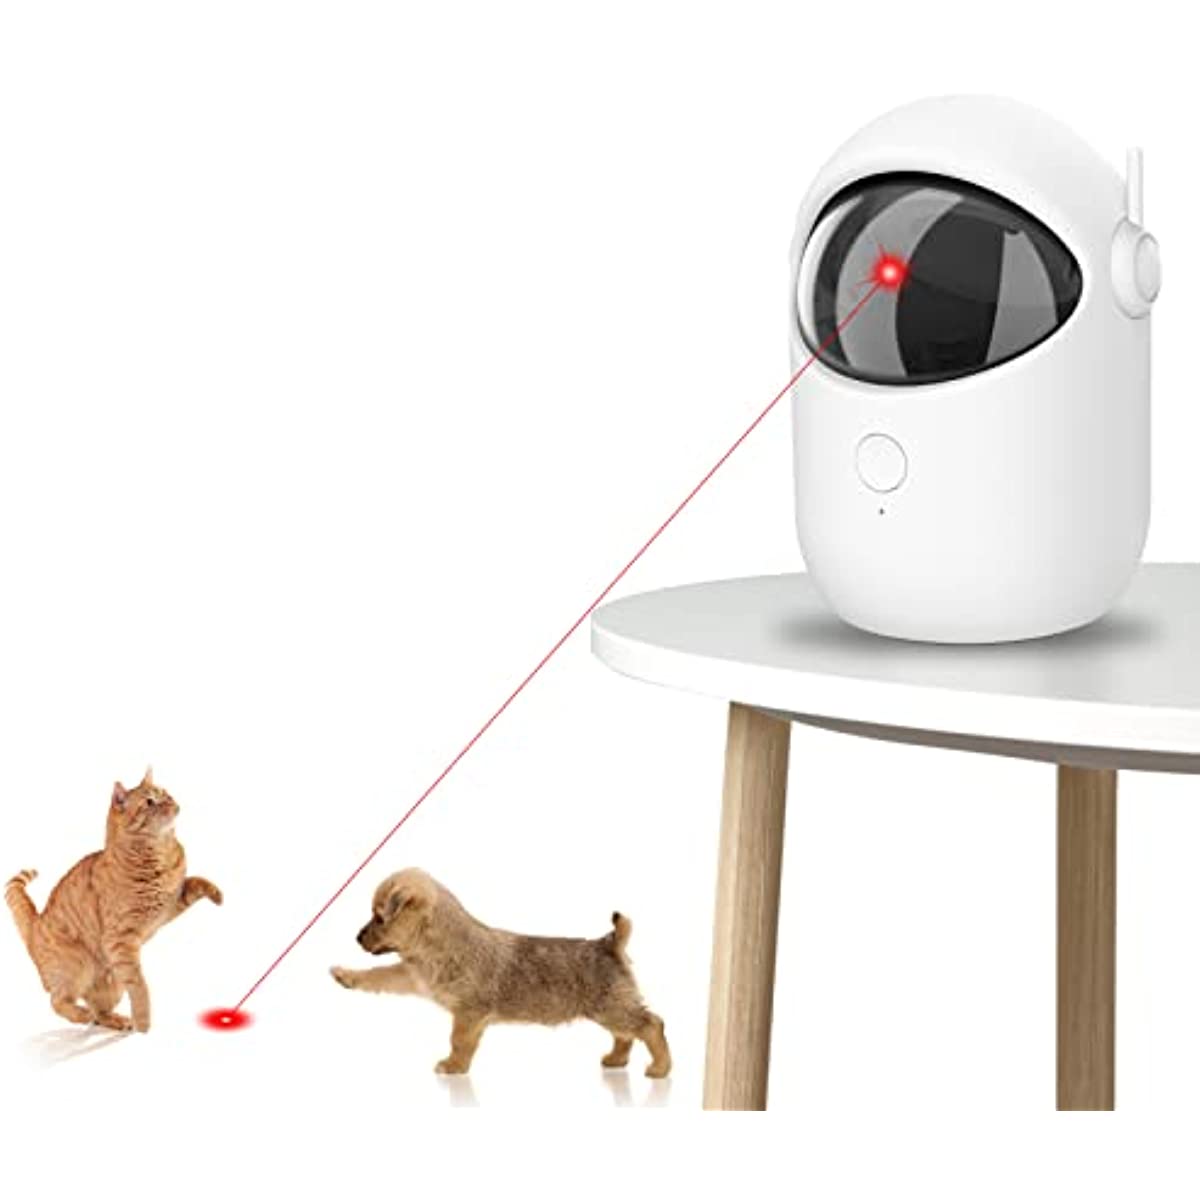 Juguete láser para gatos, puntero láser rojo, juguete para gatos, juguetes  interactivos para gatos de interior, perros, puntero láser recargable USB  para gatos para perseguir juguetes de gatitos, punt